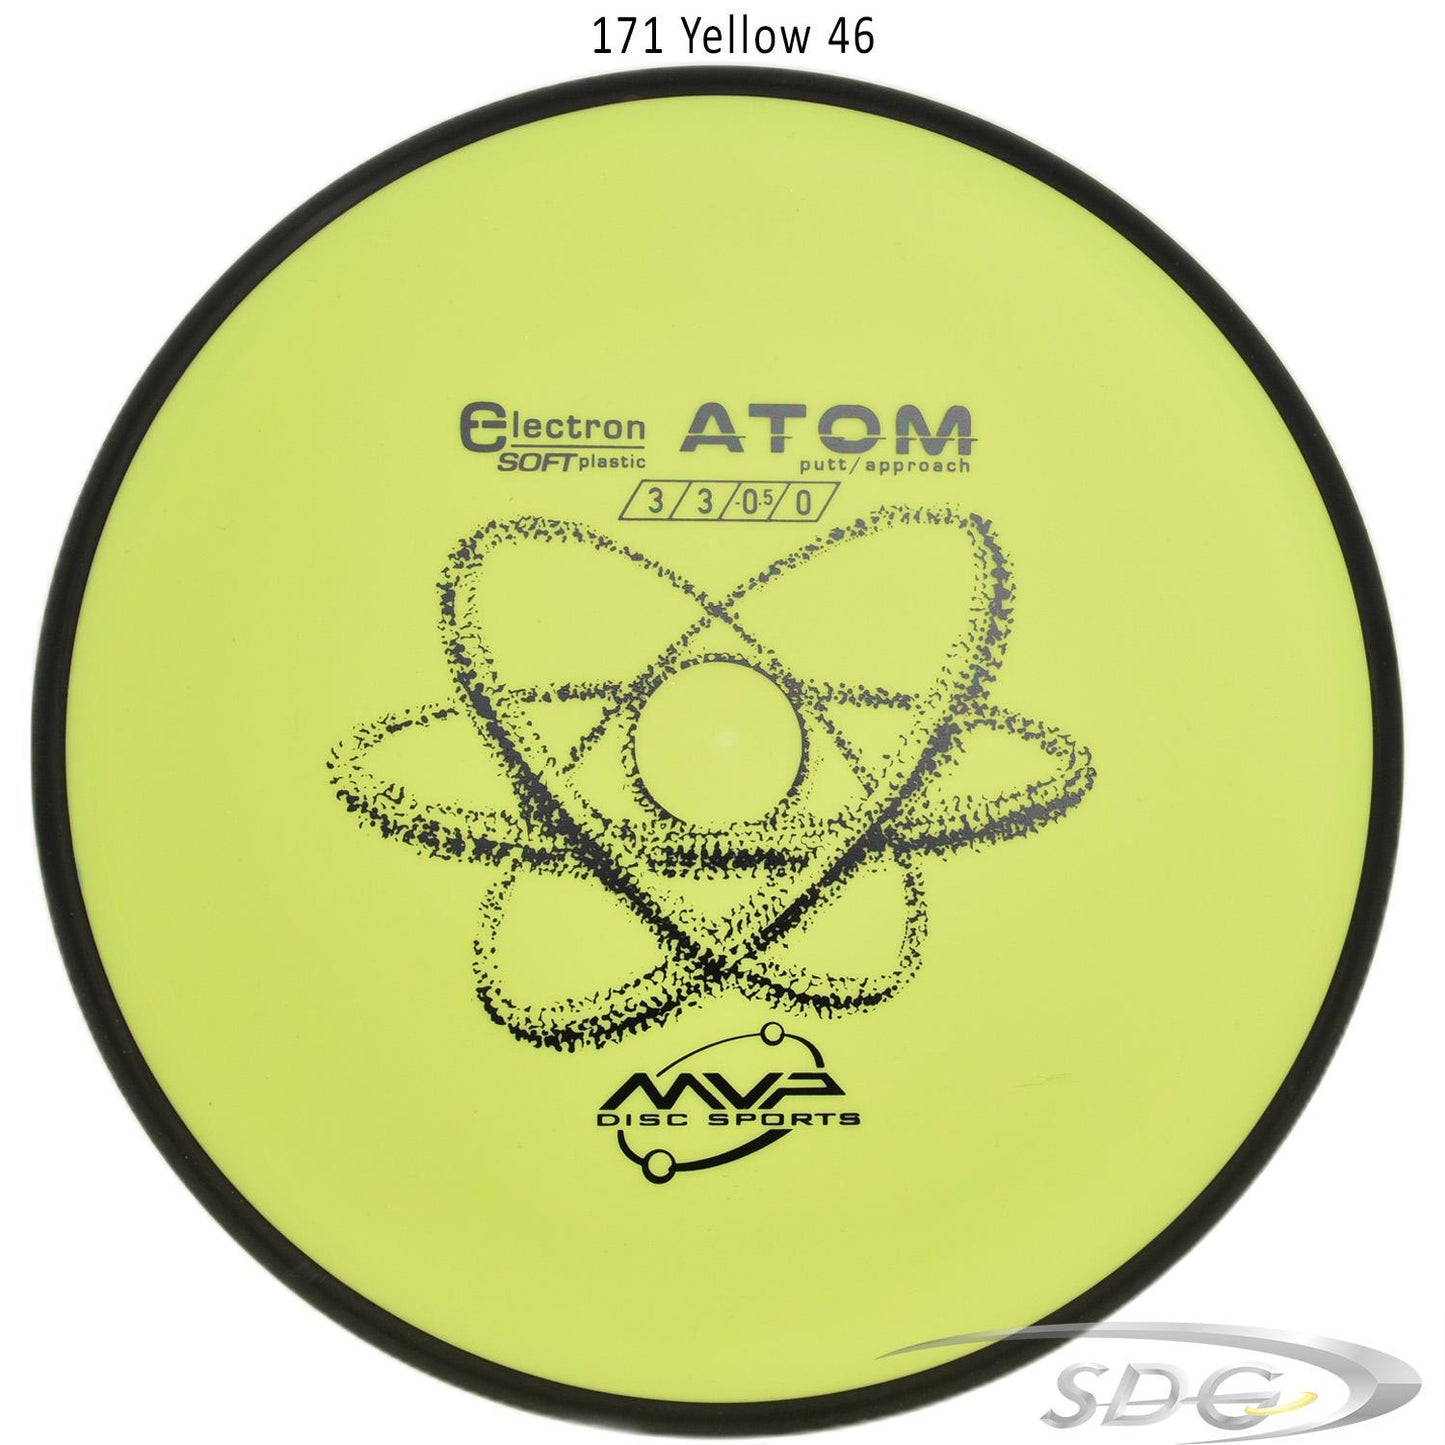 mvp-electron-atom-soft-disc-golf-putt-approach 171 Yellow 46 